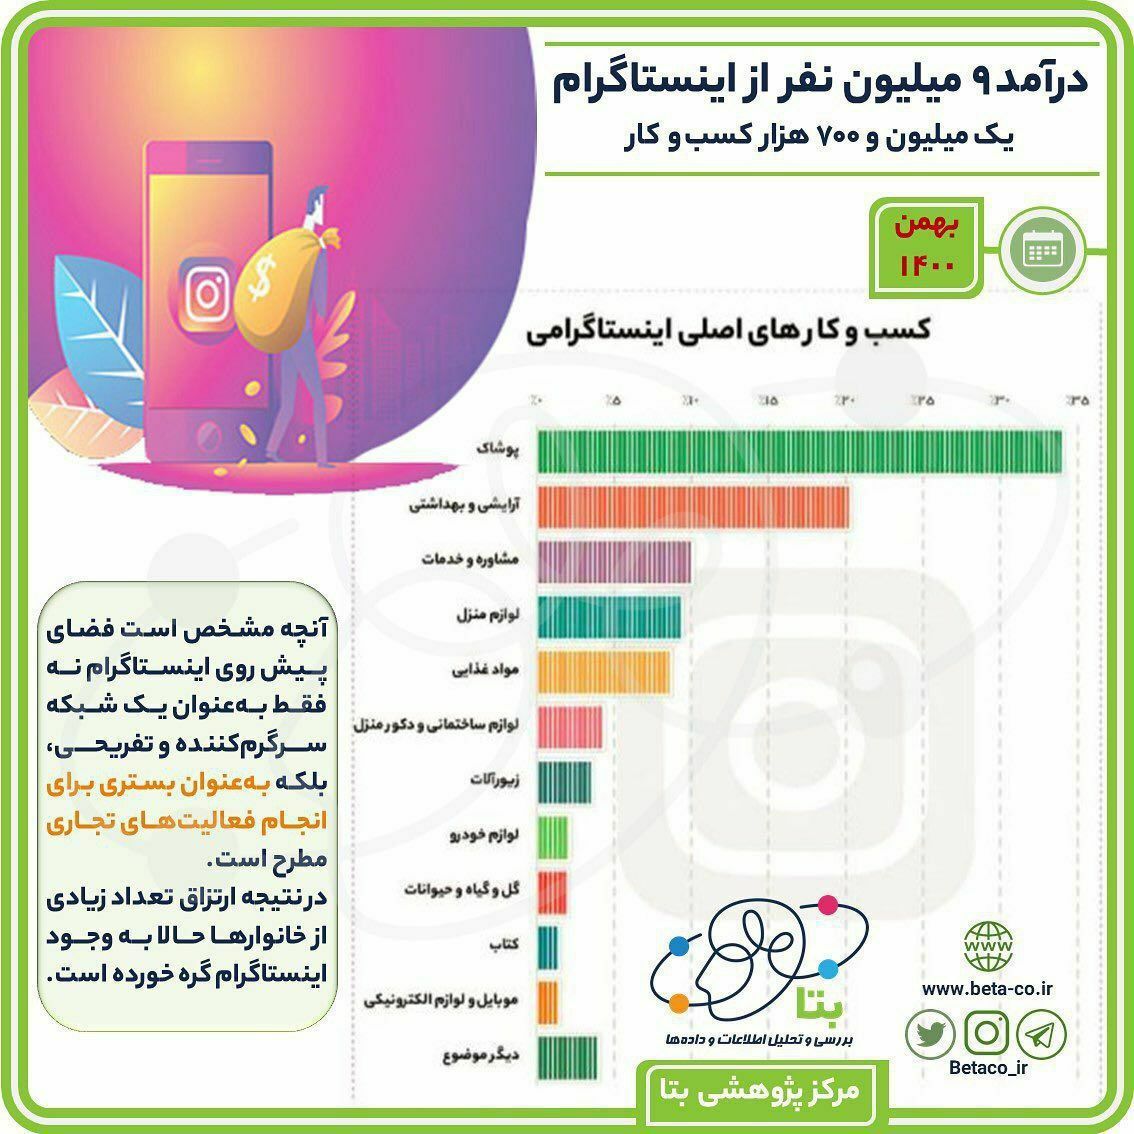 درآمد ۹ میلیون ایرانی از اینستاگرام